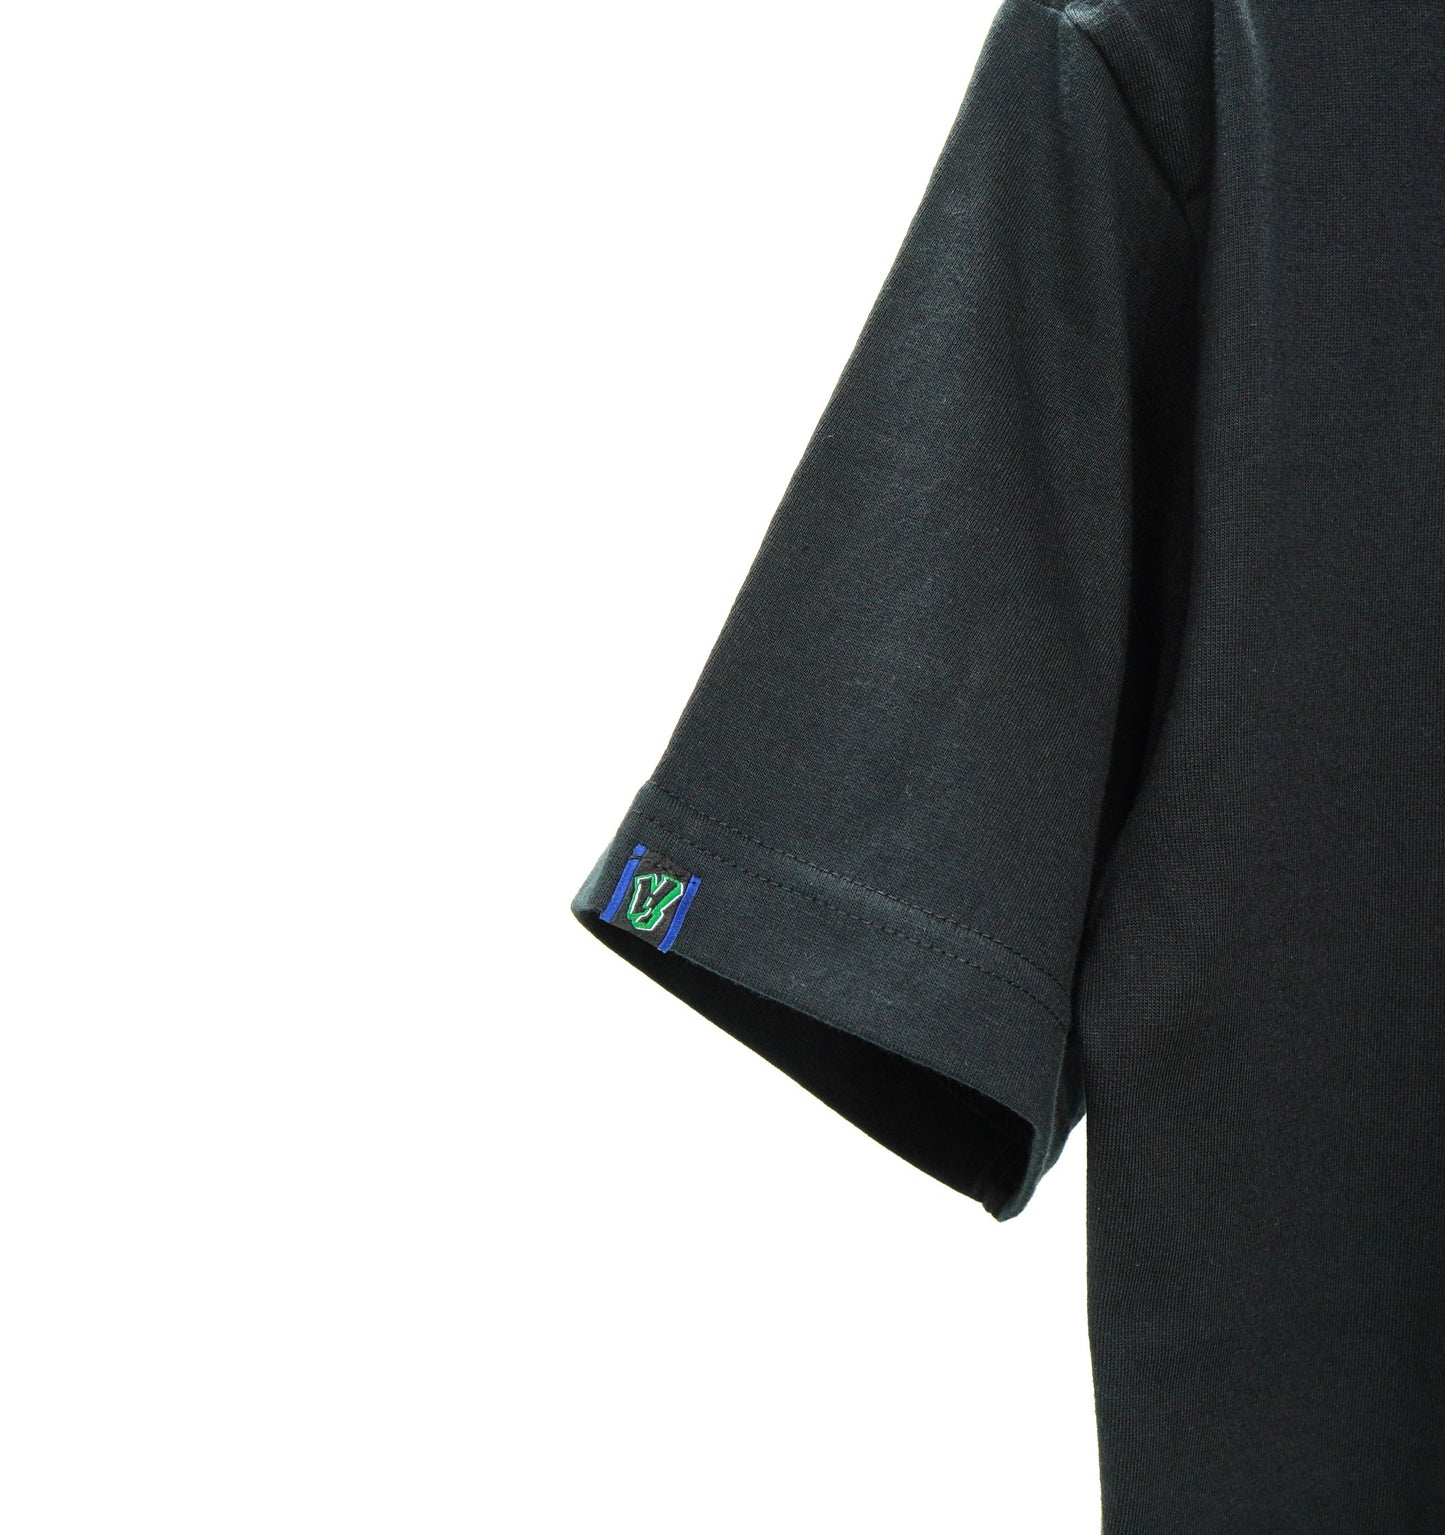 NON TOKYO / RHINO PRINT T/S (BLACK) / 〈ノントーキョー〉ライノプリントTシャツ  (ブラック)